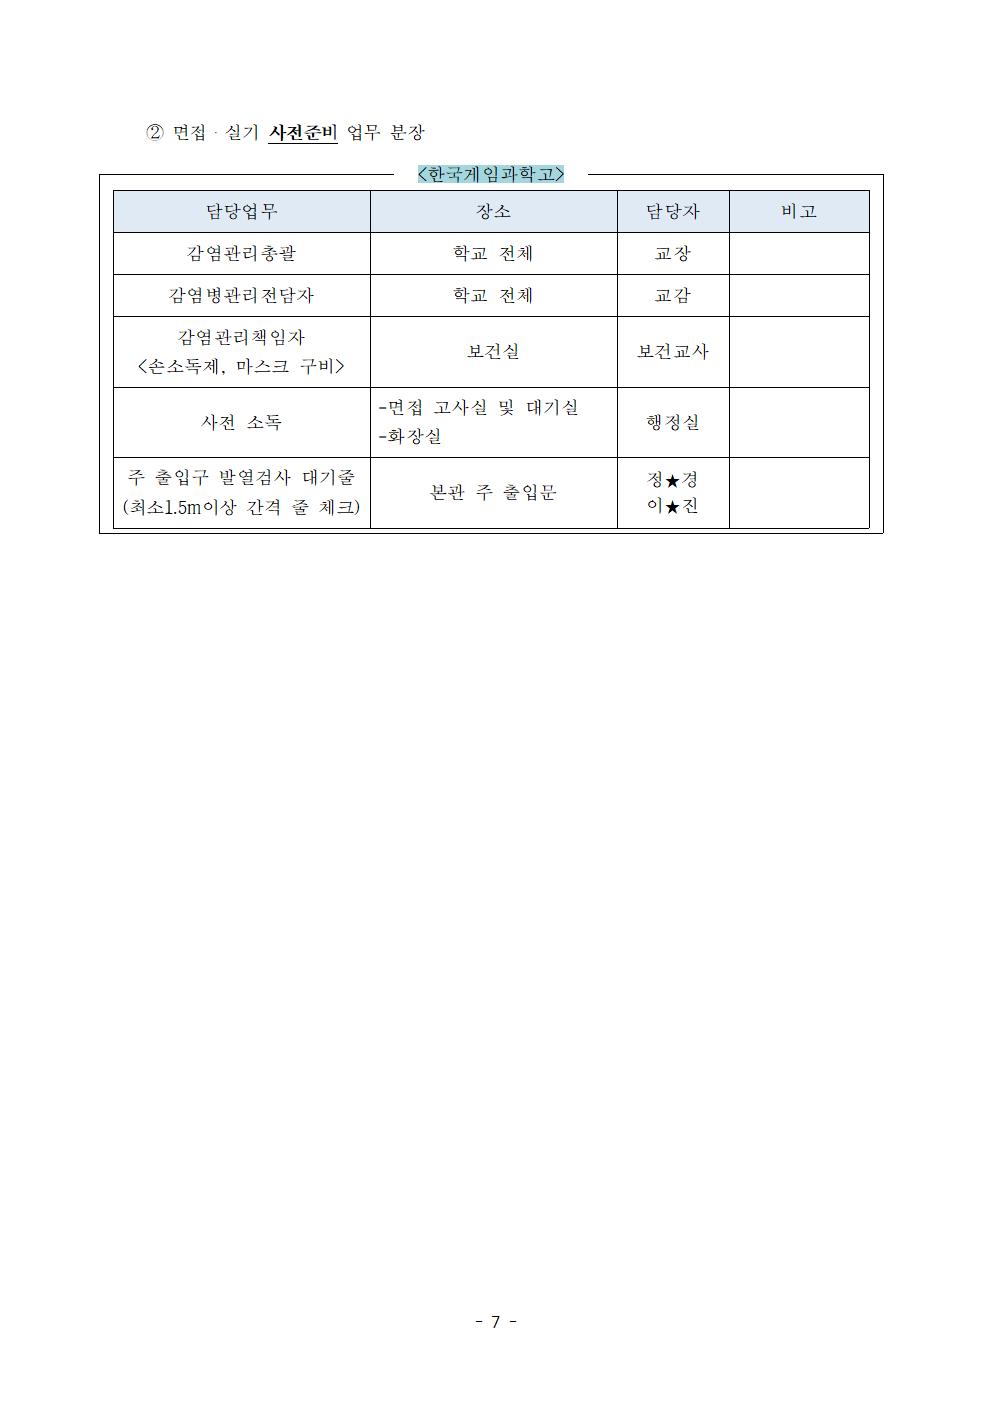 2021학년도 학교별 입학전형 안전관리 계획_한국게임과학고(홈페이지게시)009